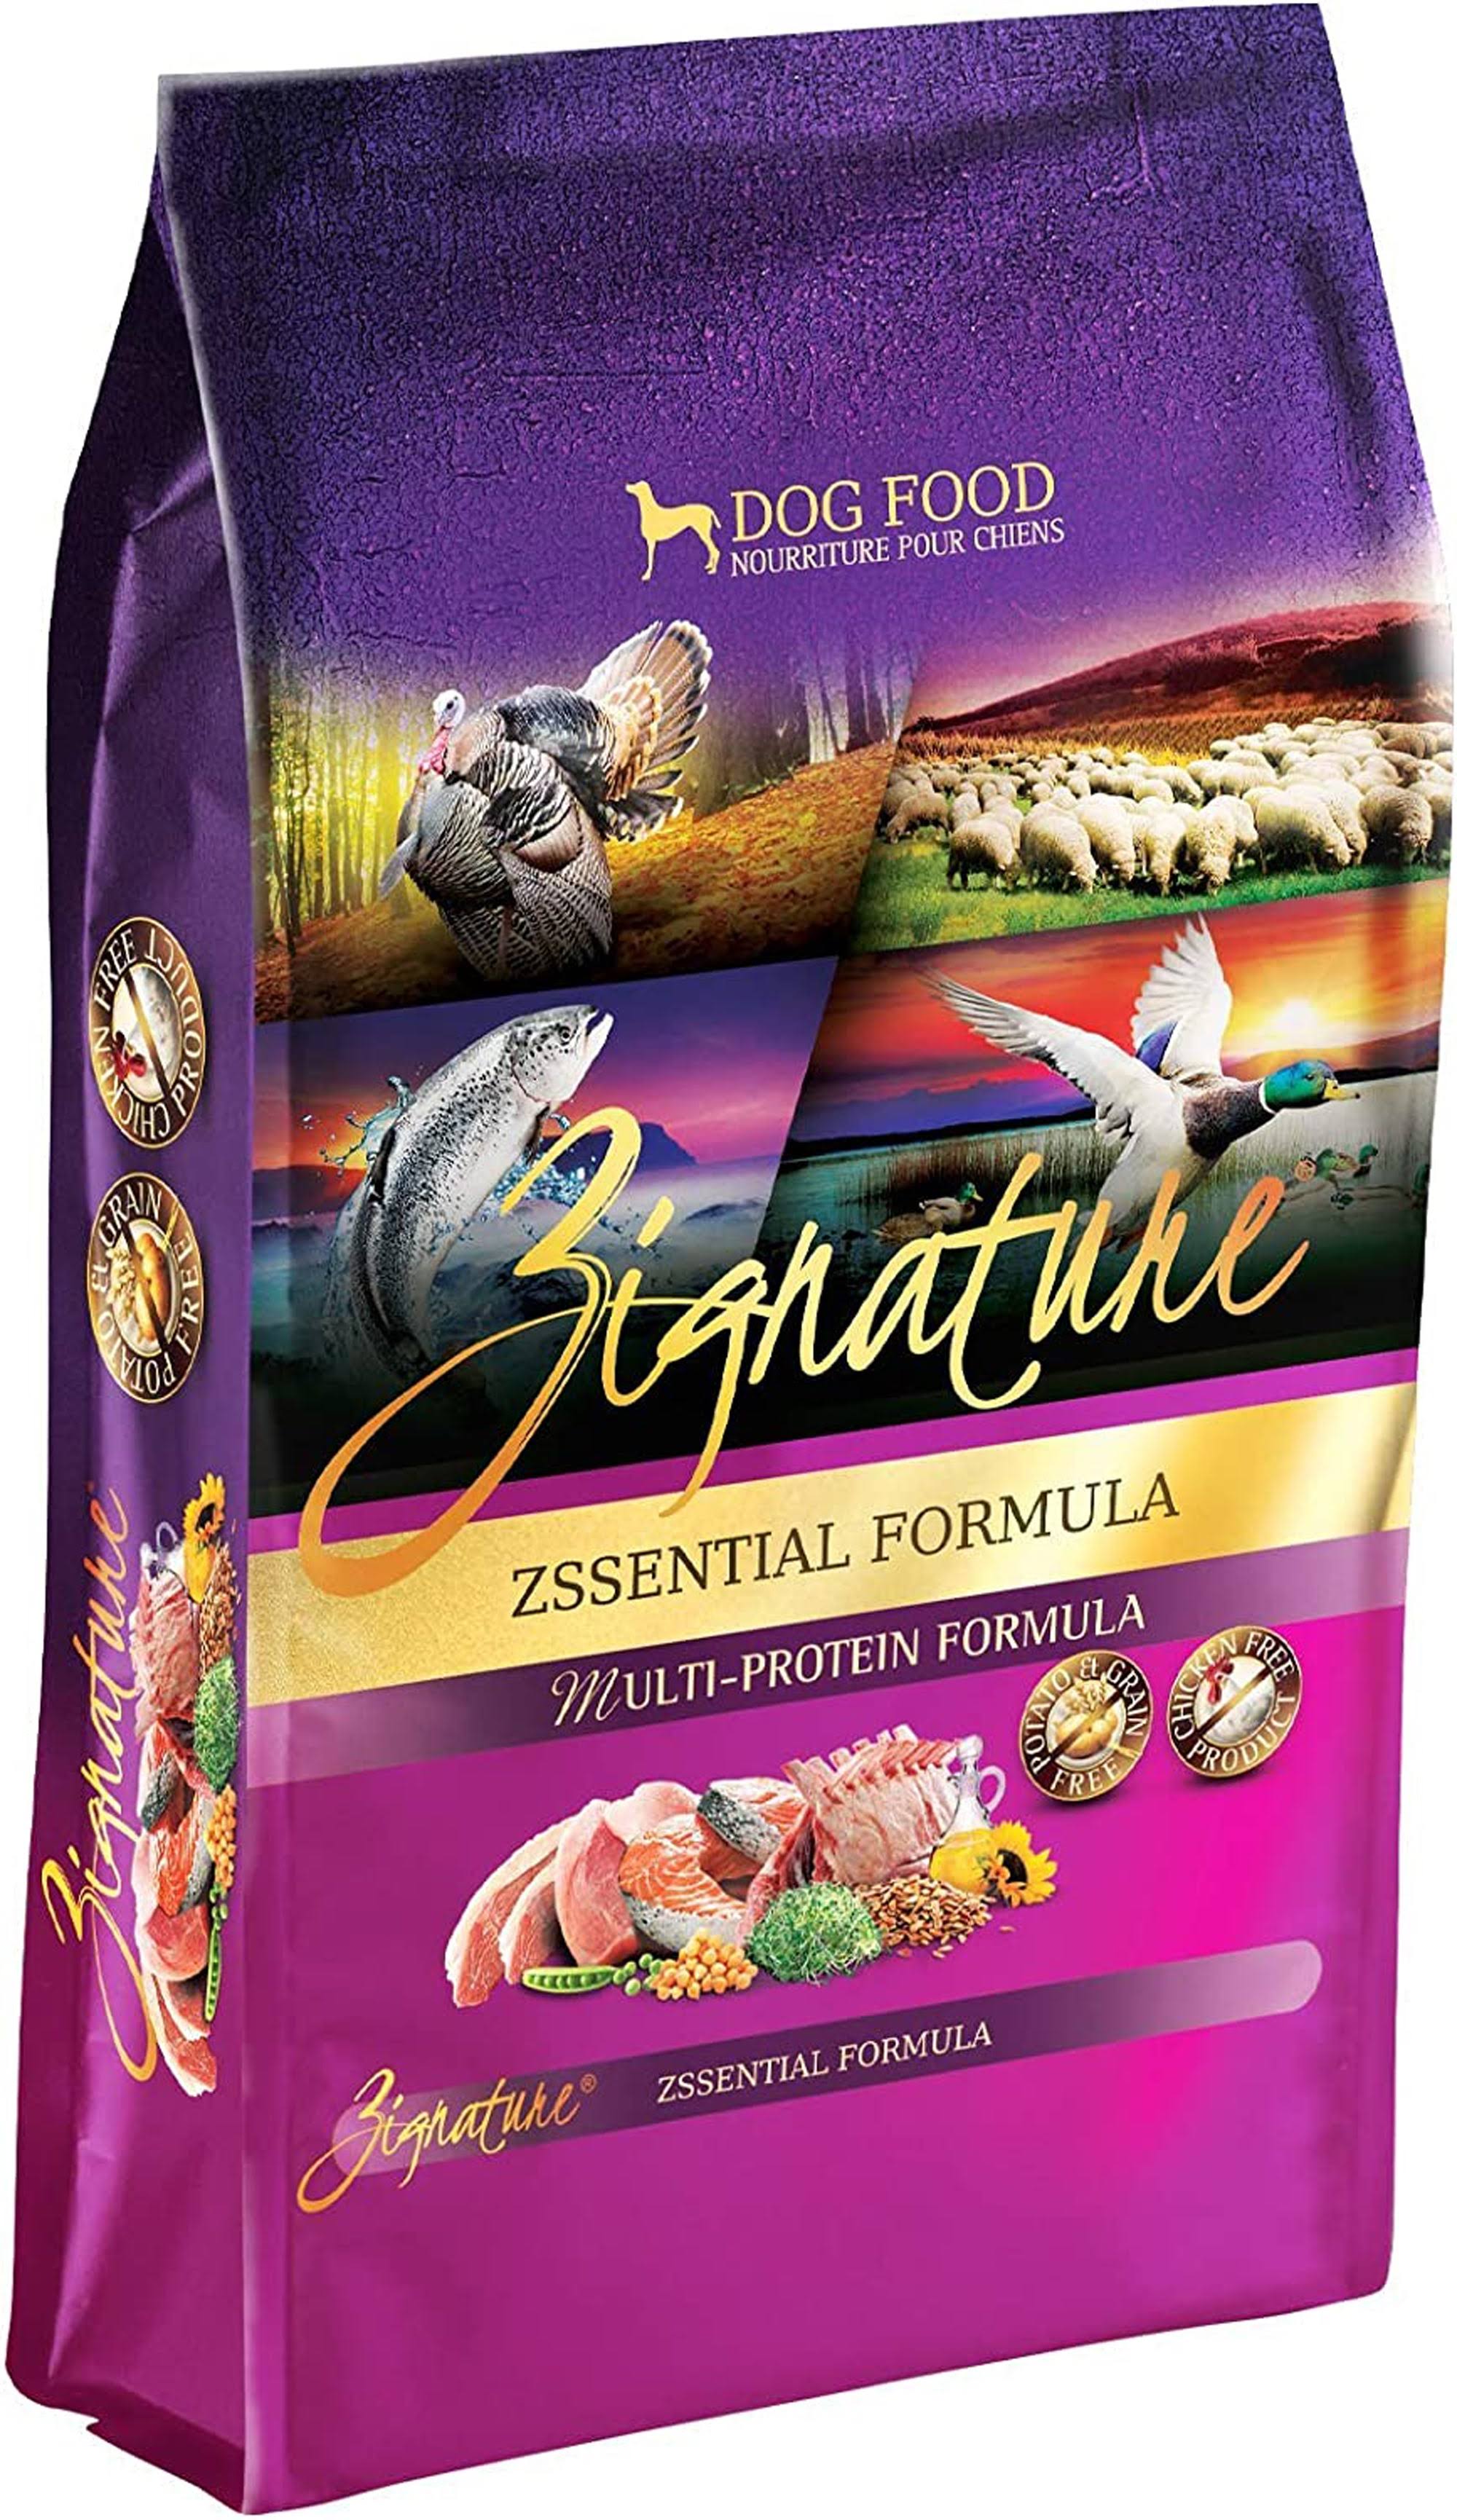 Zignature Zssential Formula Dog Food - 13.5lb